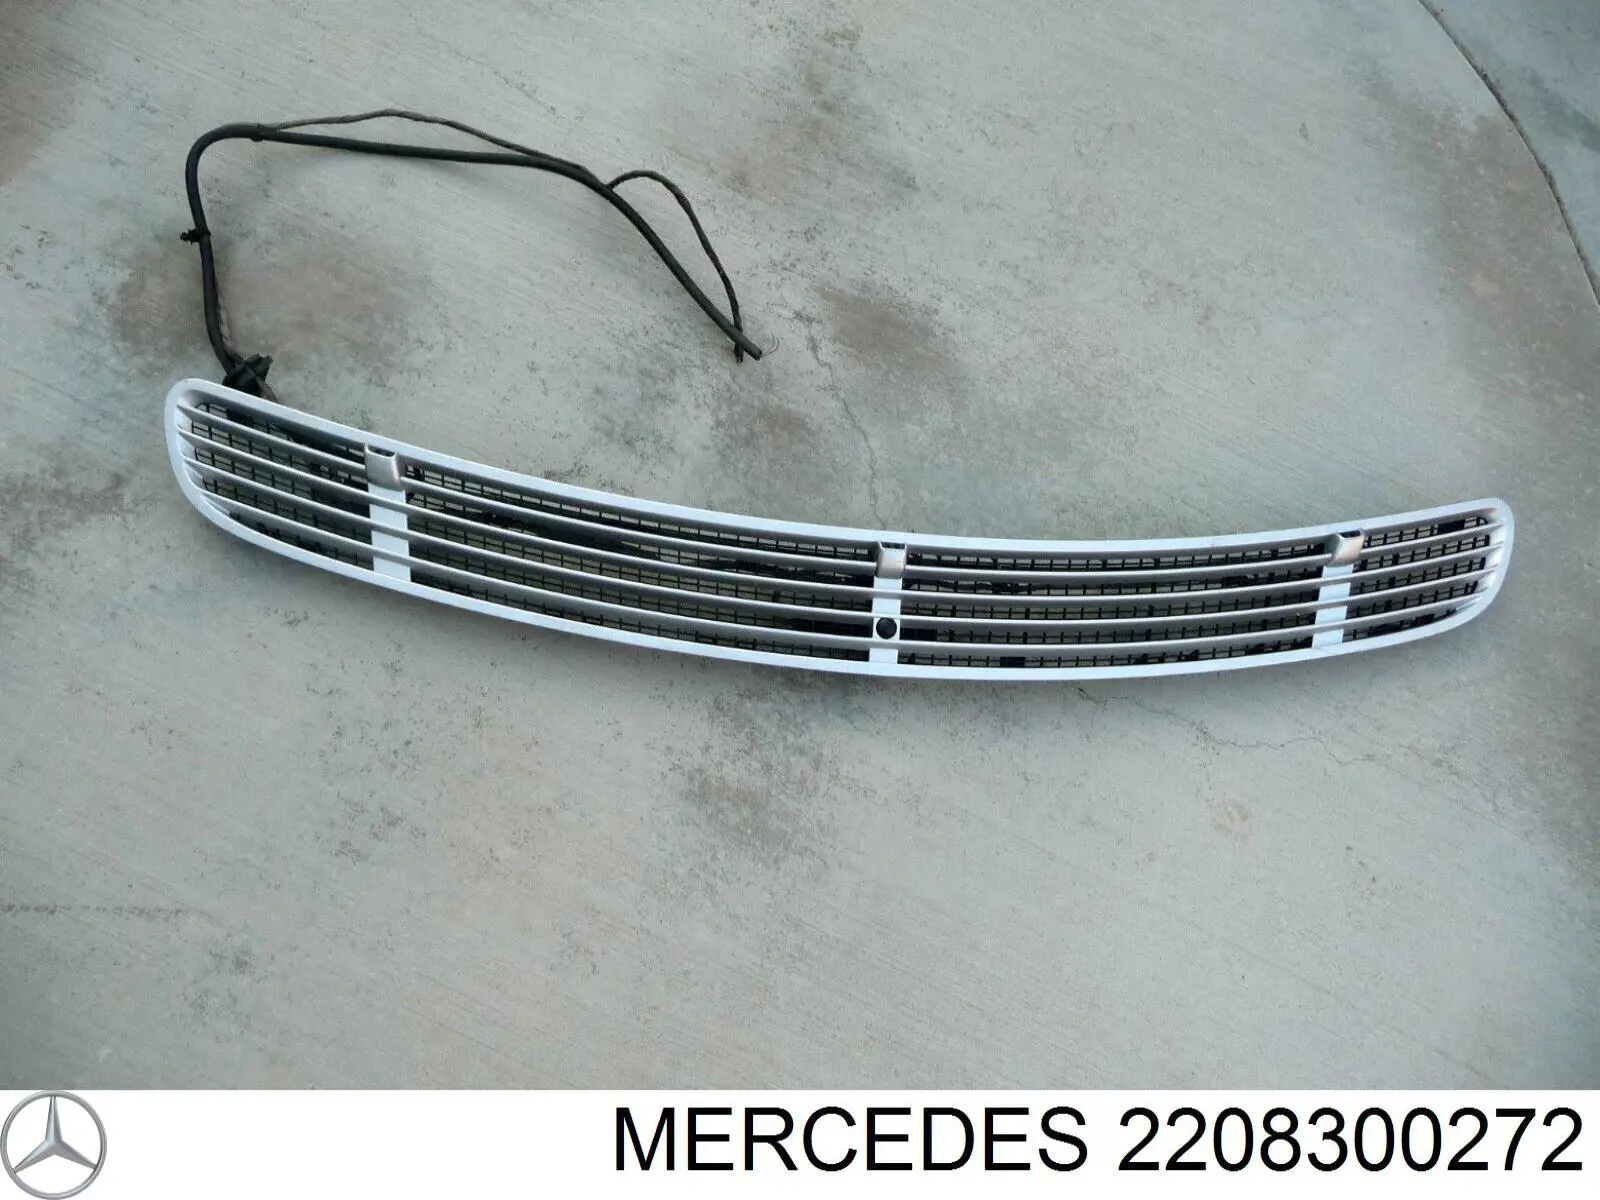 Sensor de luz para Mercedes S (W221)